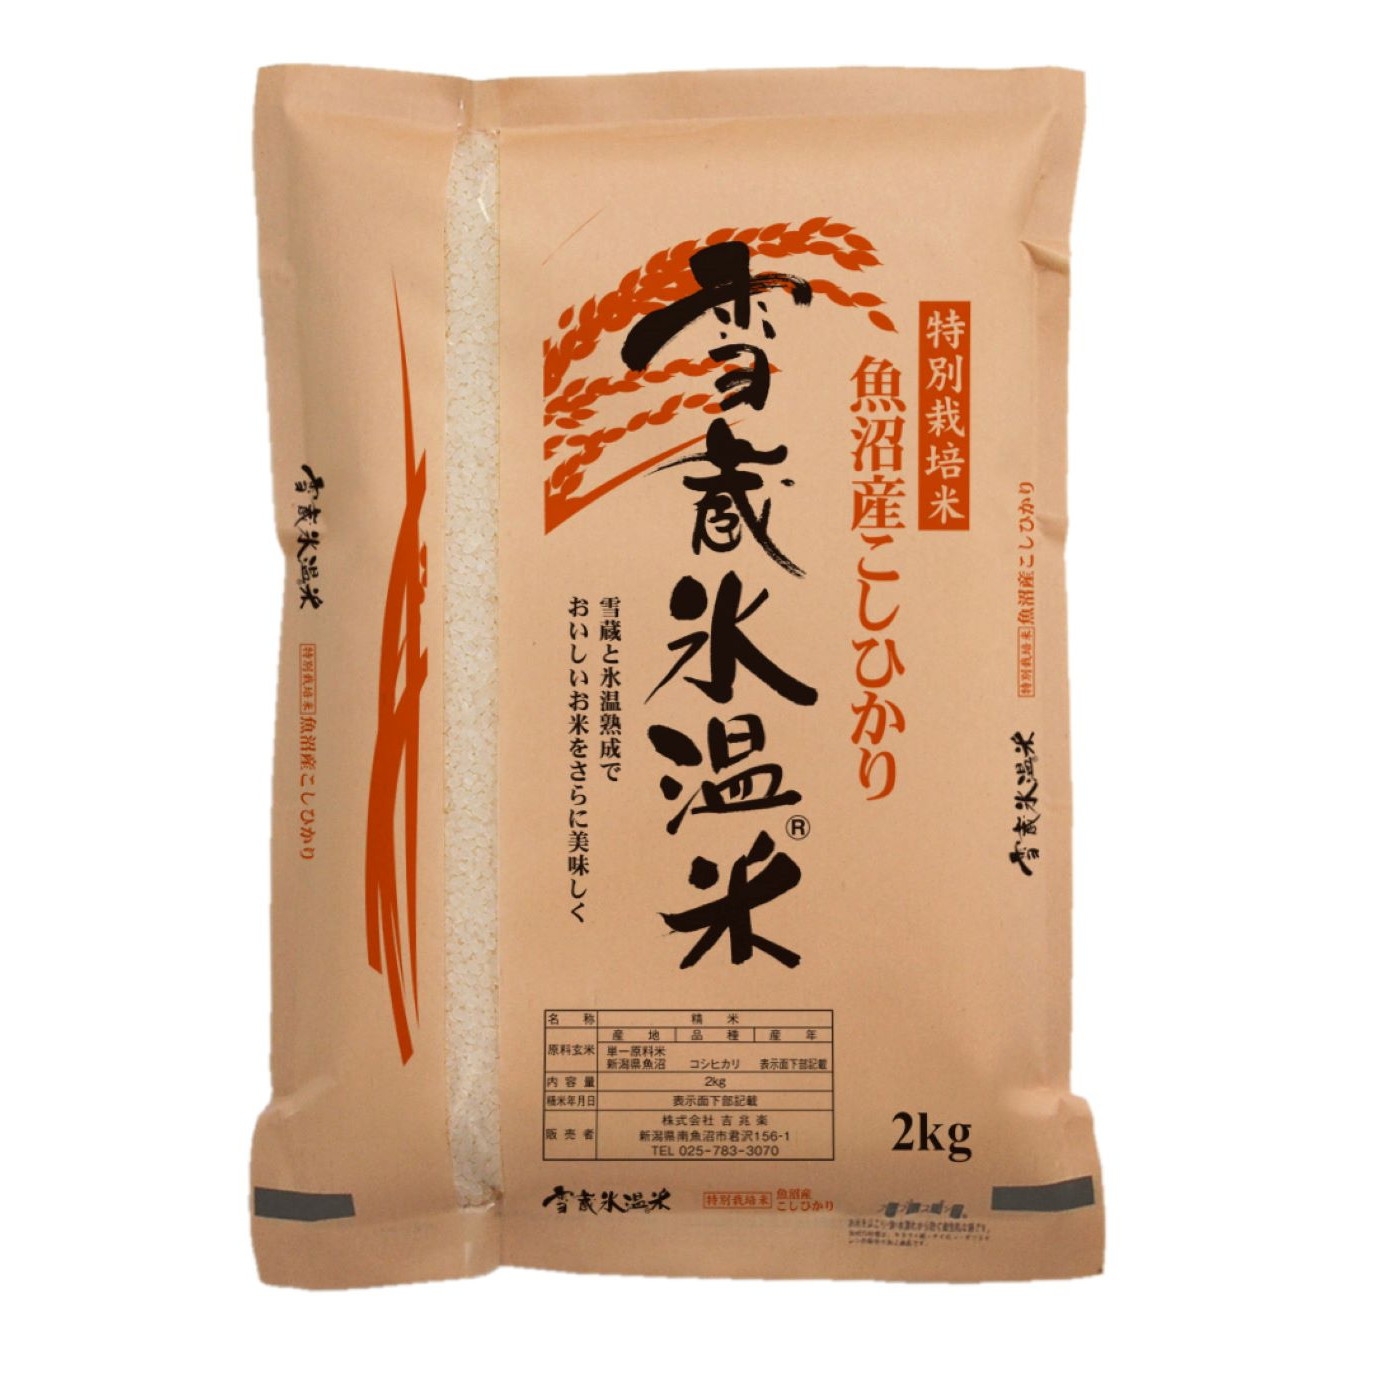 雪蔵氷温®米 魚沼産こしひかり特別栽培米 2kg